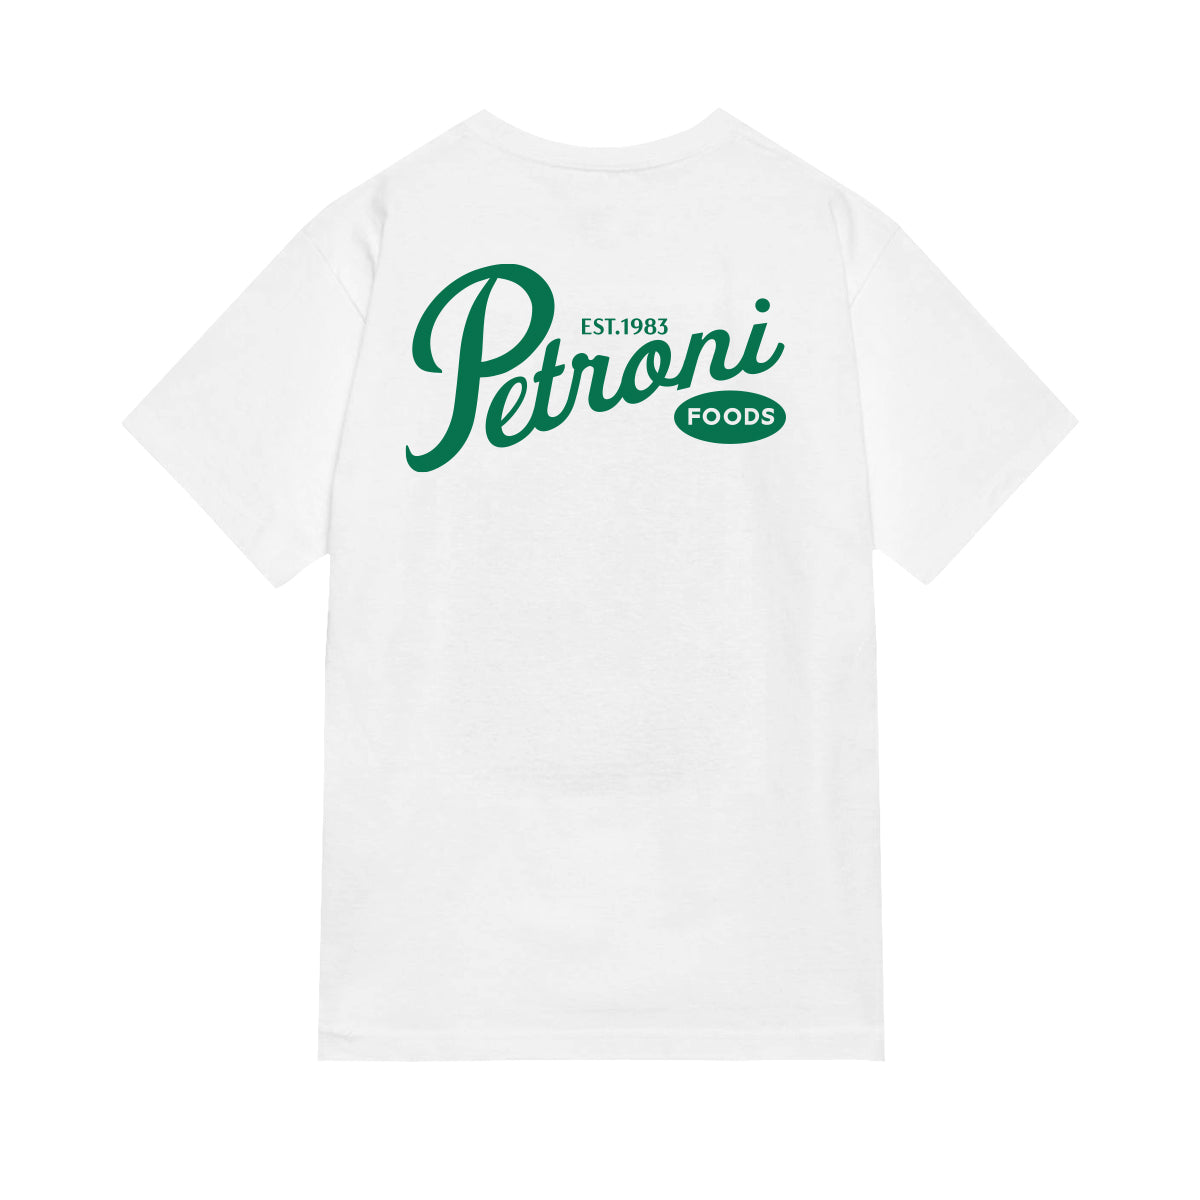 Petroni Foods T-Shirt - White